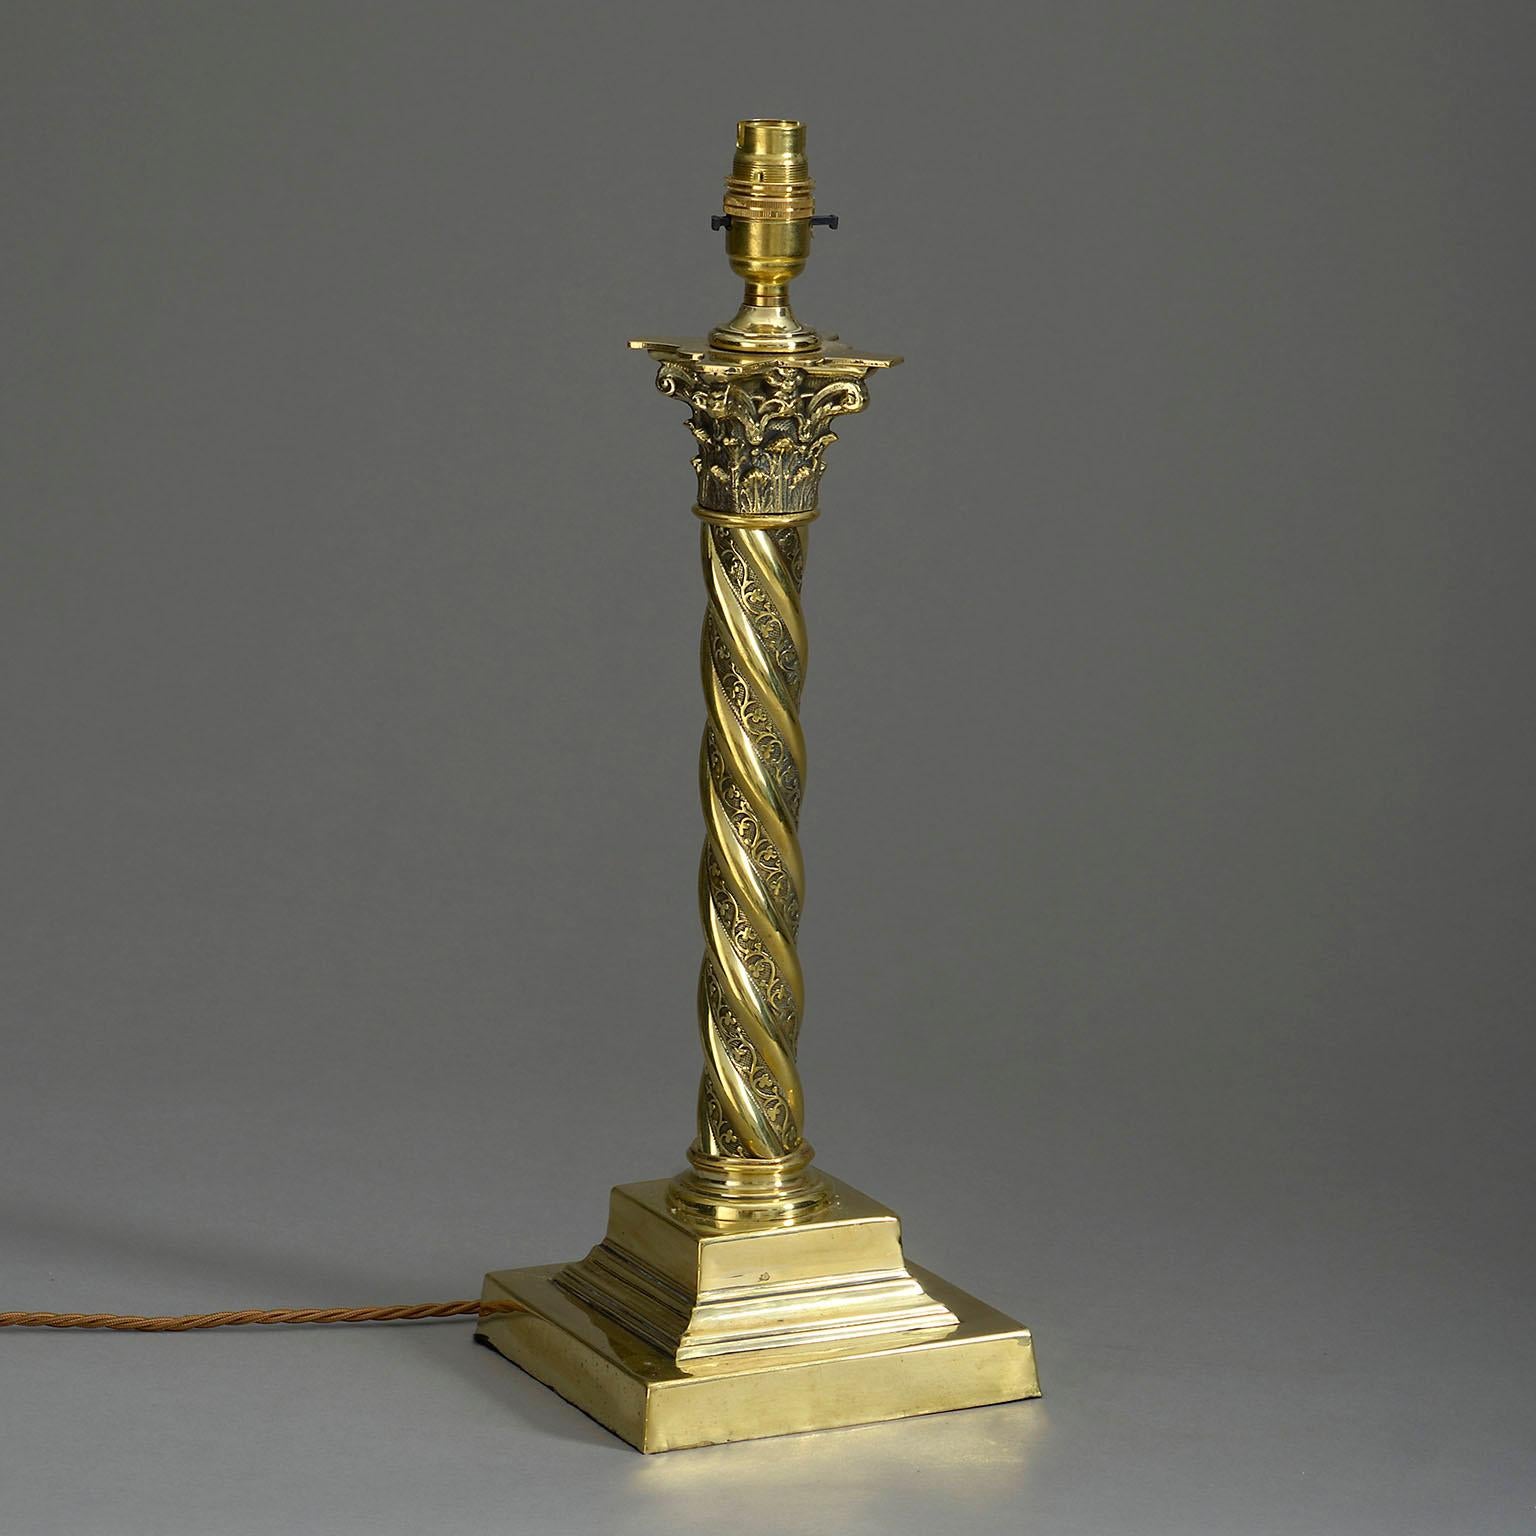 Lampe de table en laiton de la fin du XIXe siècle, de style victorien. Le chapiteau corinthien repose sur une tige en spirale et se termine par une base carrée en forme de plinthe.

Câblé selon les normes britanniques. Cette lampe peut être recâblée